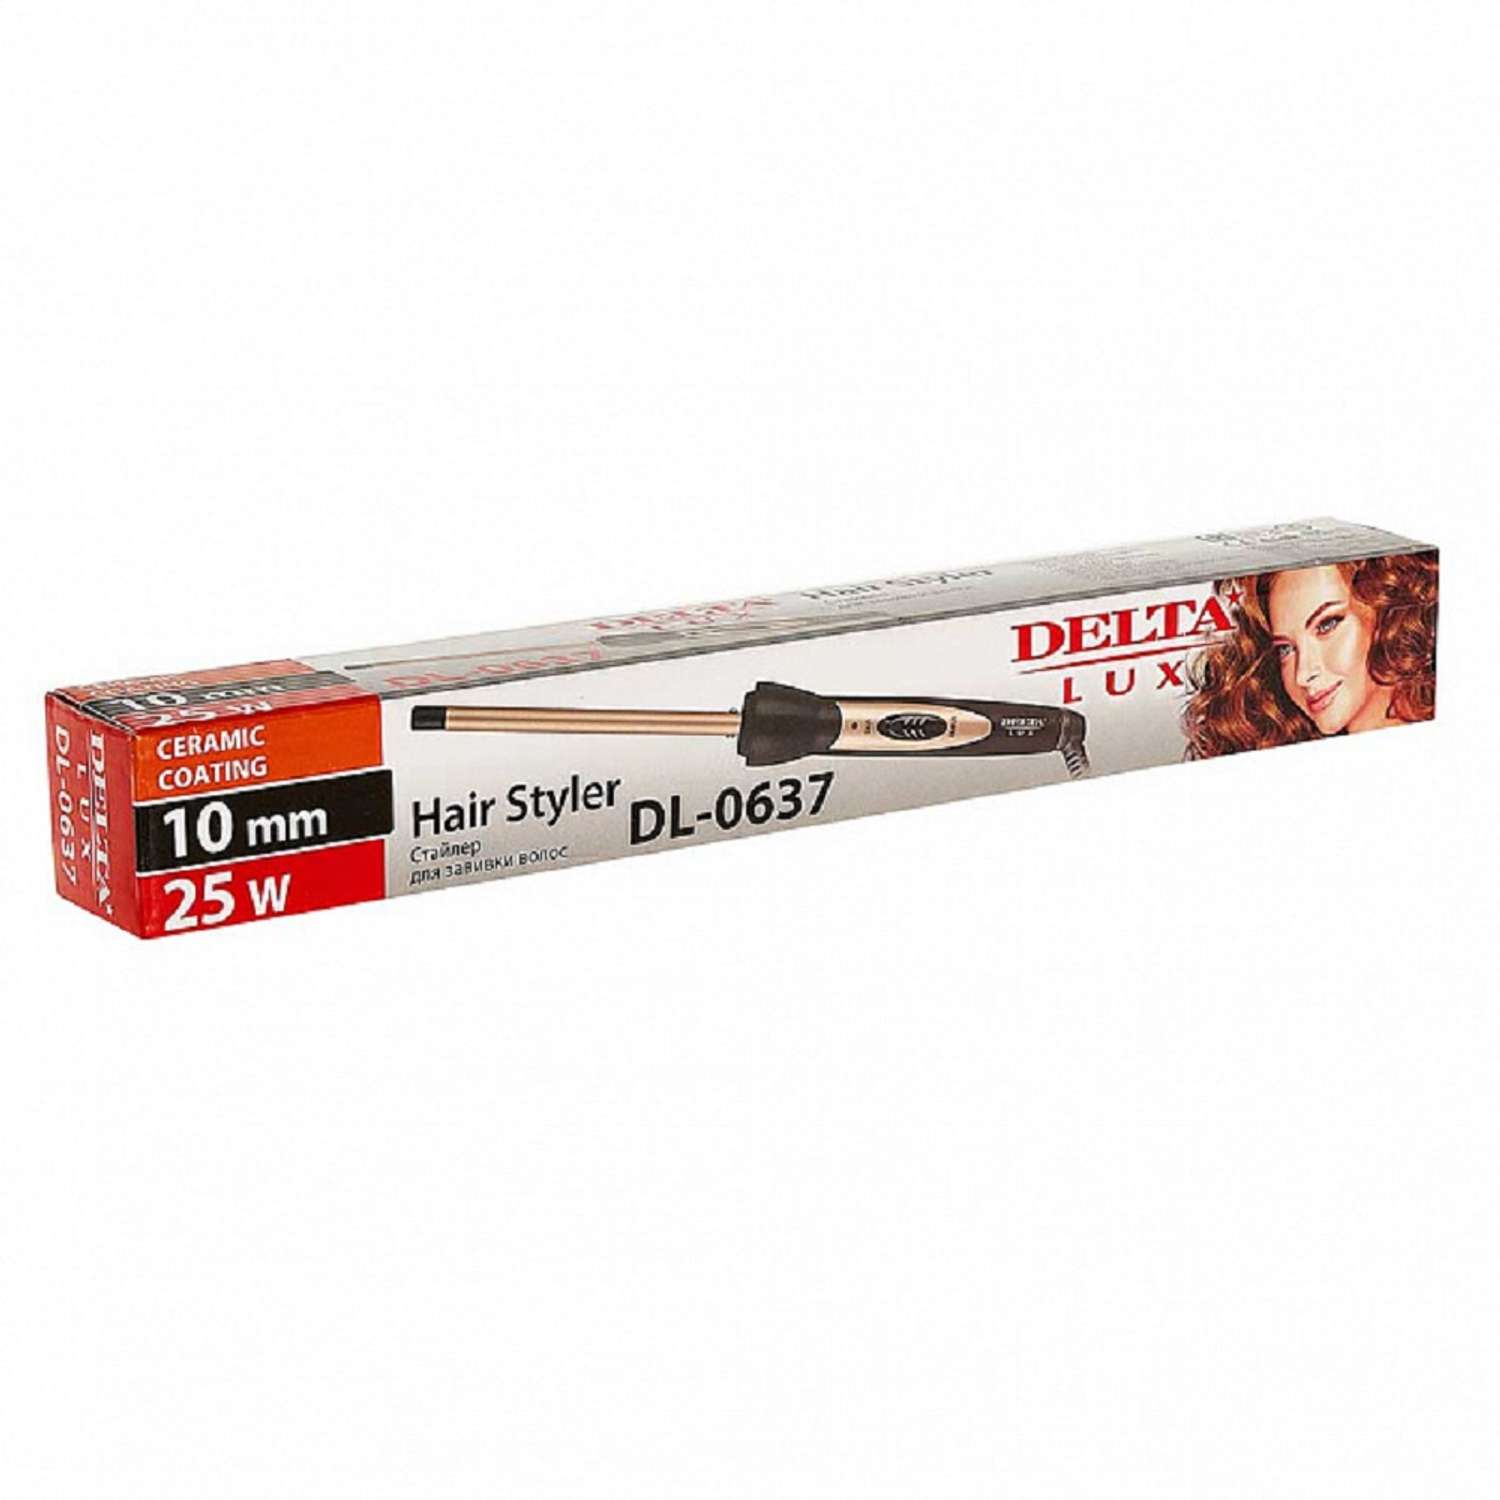 Стайлер для завивки волос Delta DELTA LUX DL-0637 керамическое покрытие D 10мм 25 Вт - фото 3